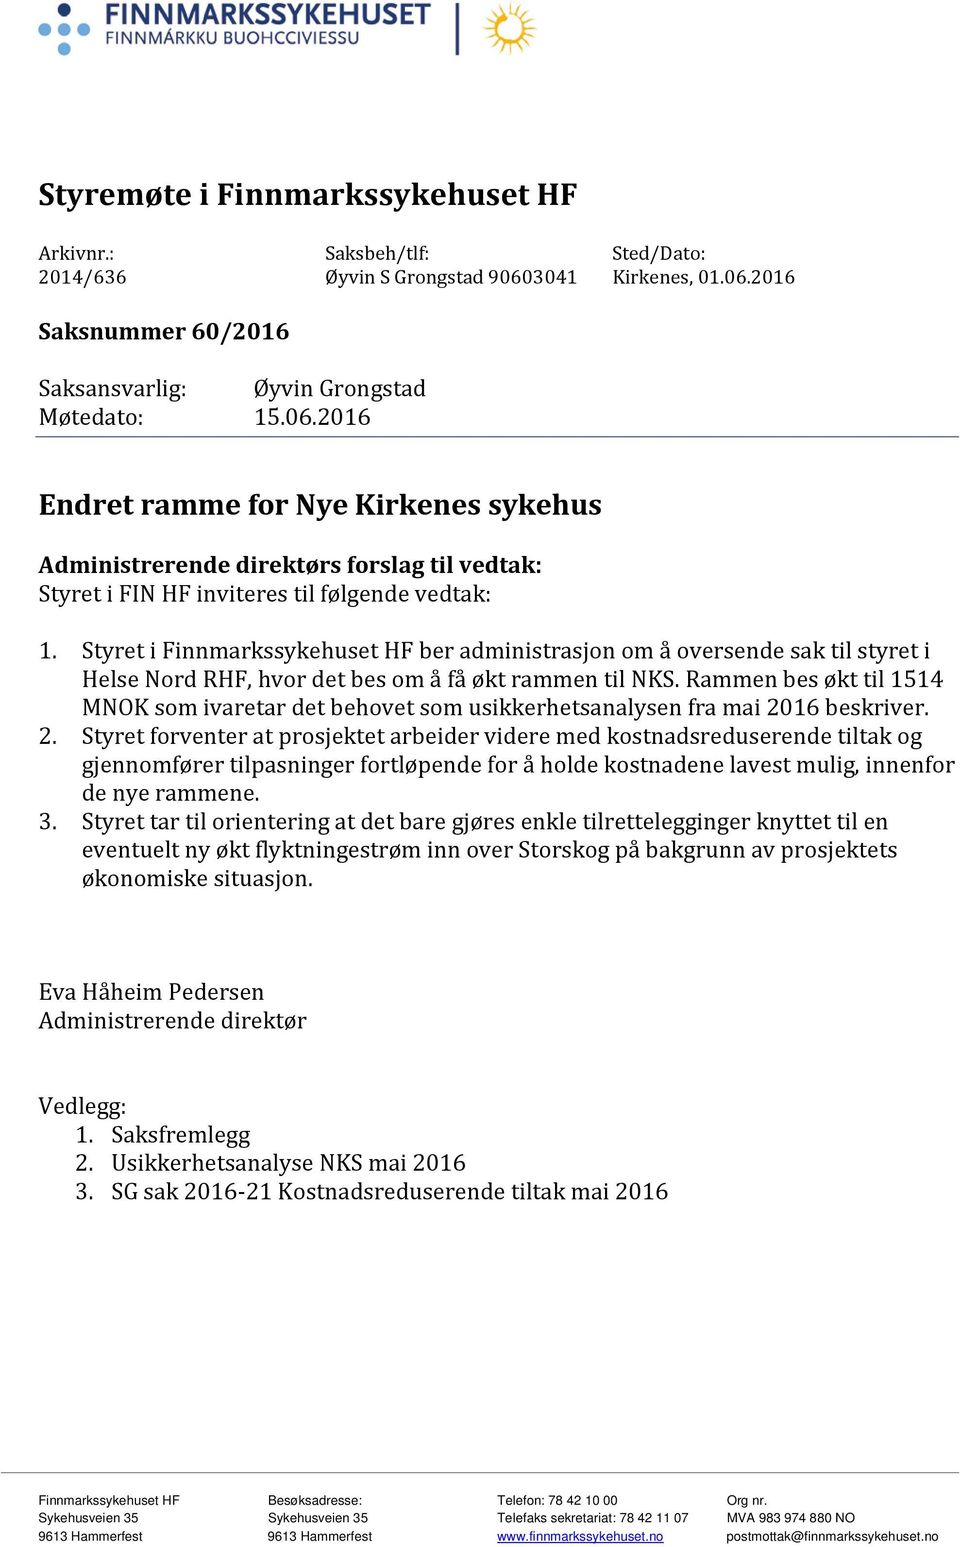 Styret i Finnmarkssykehuset HF ber administrasjon om å oversende sak til styret i Helse Nord RHF, hvor det bes om å få økt rammen til NKS.